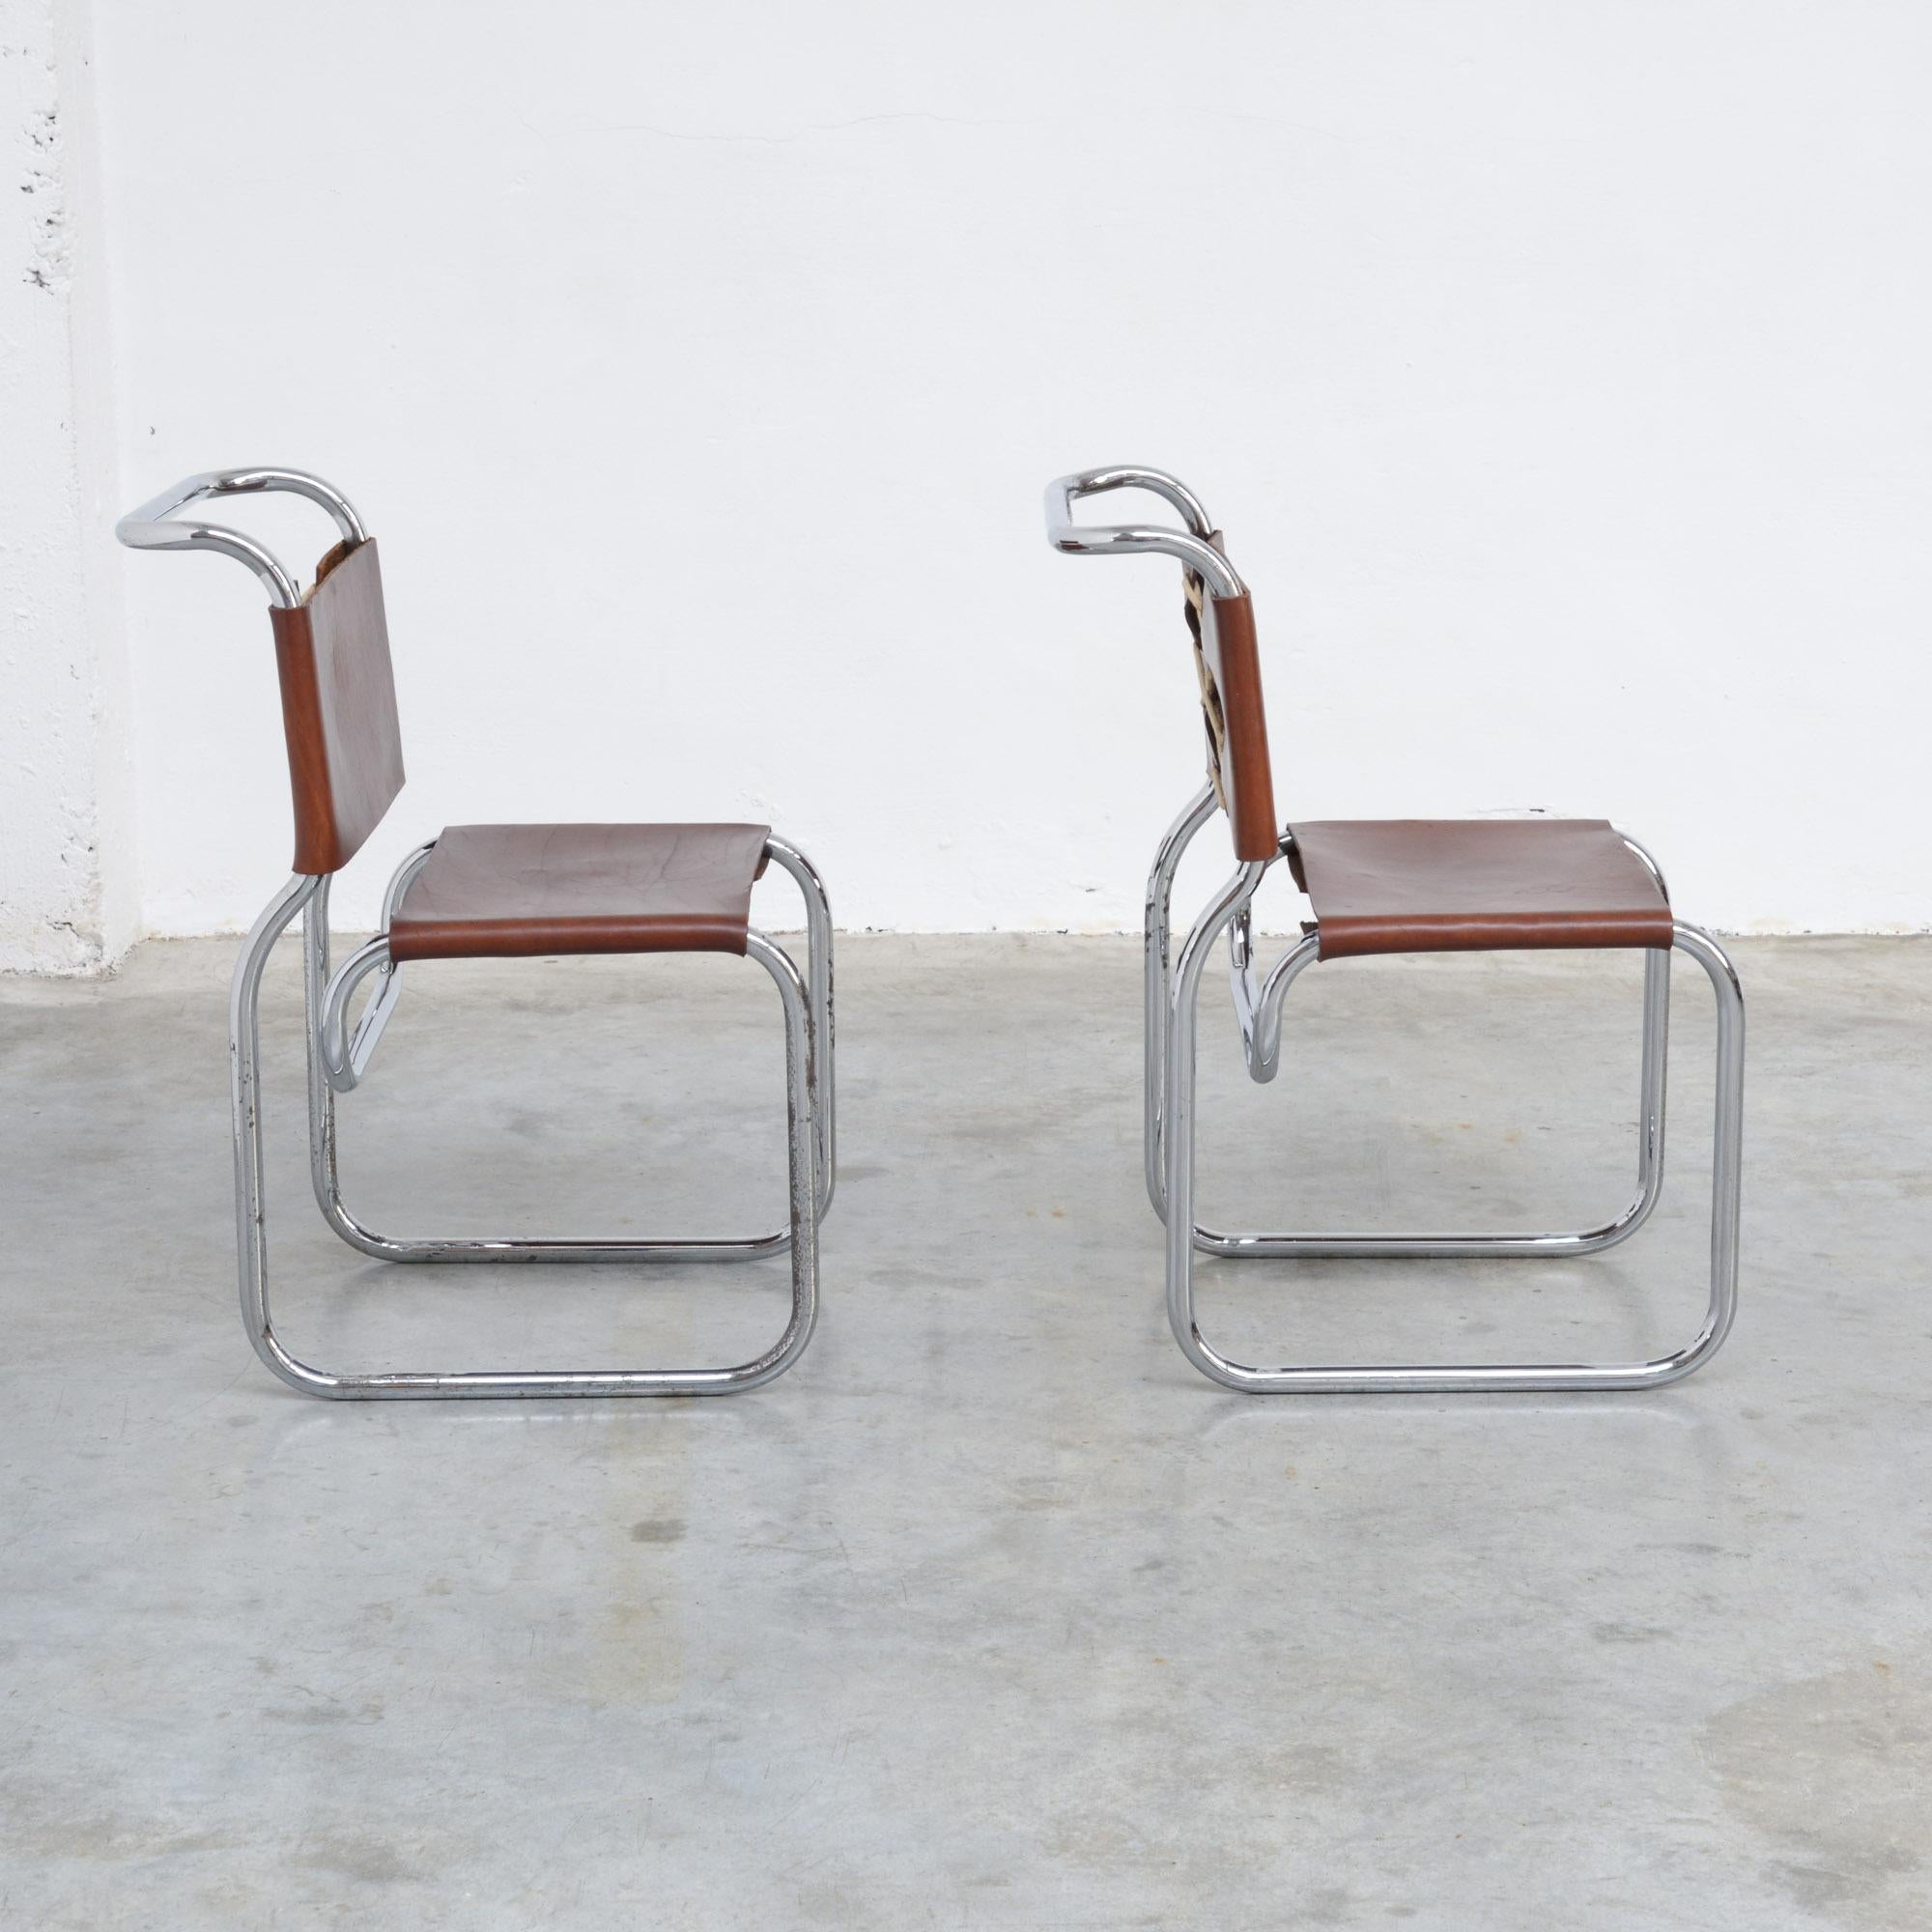 European Pair of Bauhaus Inspired Tubular Chairs